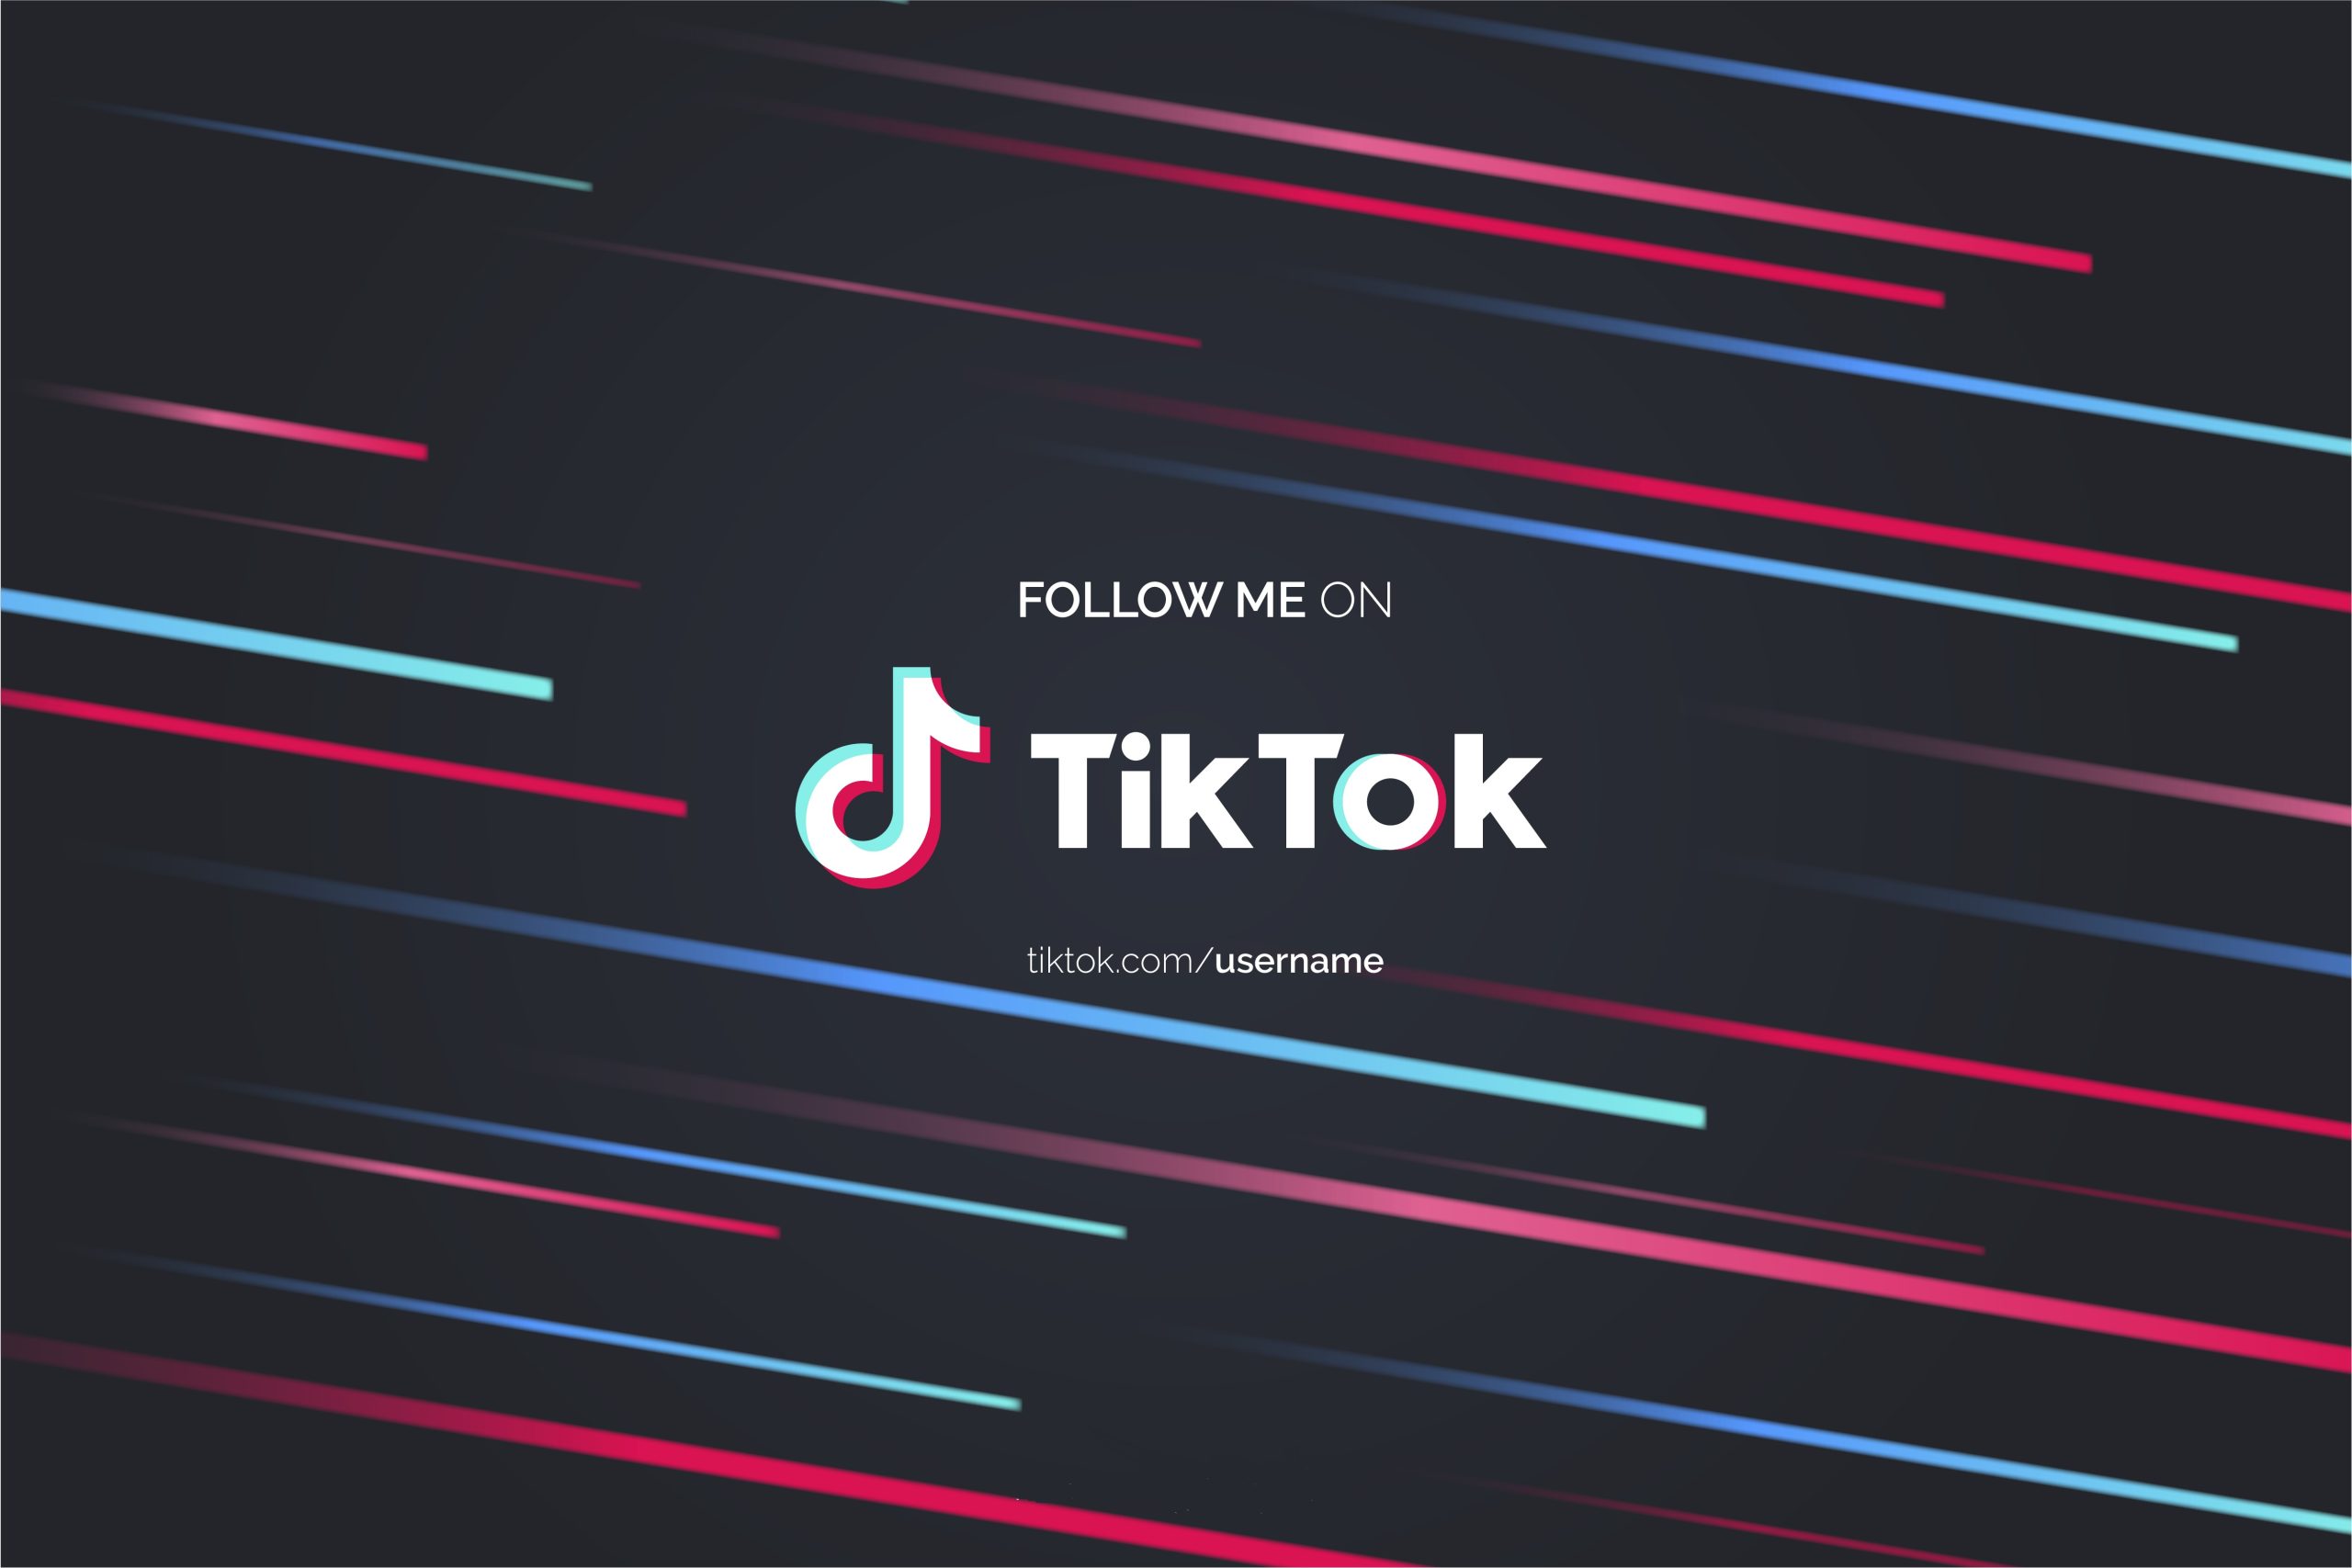 La nueva función de TikTok